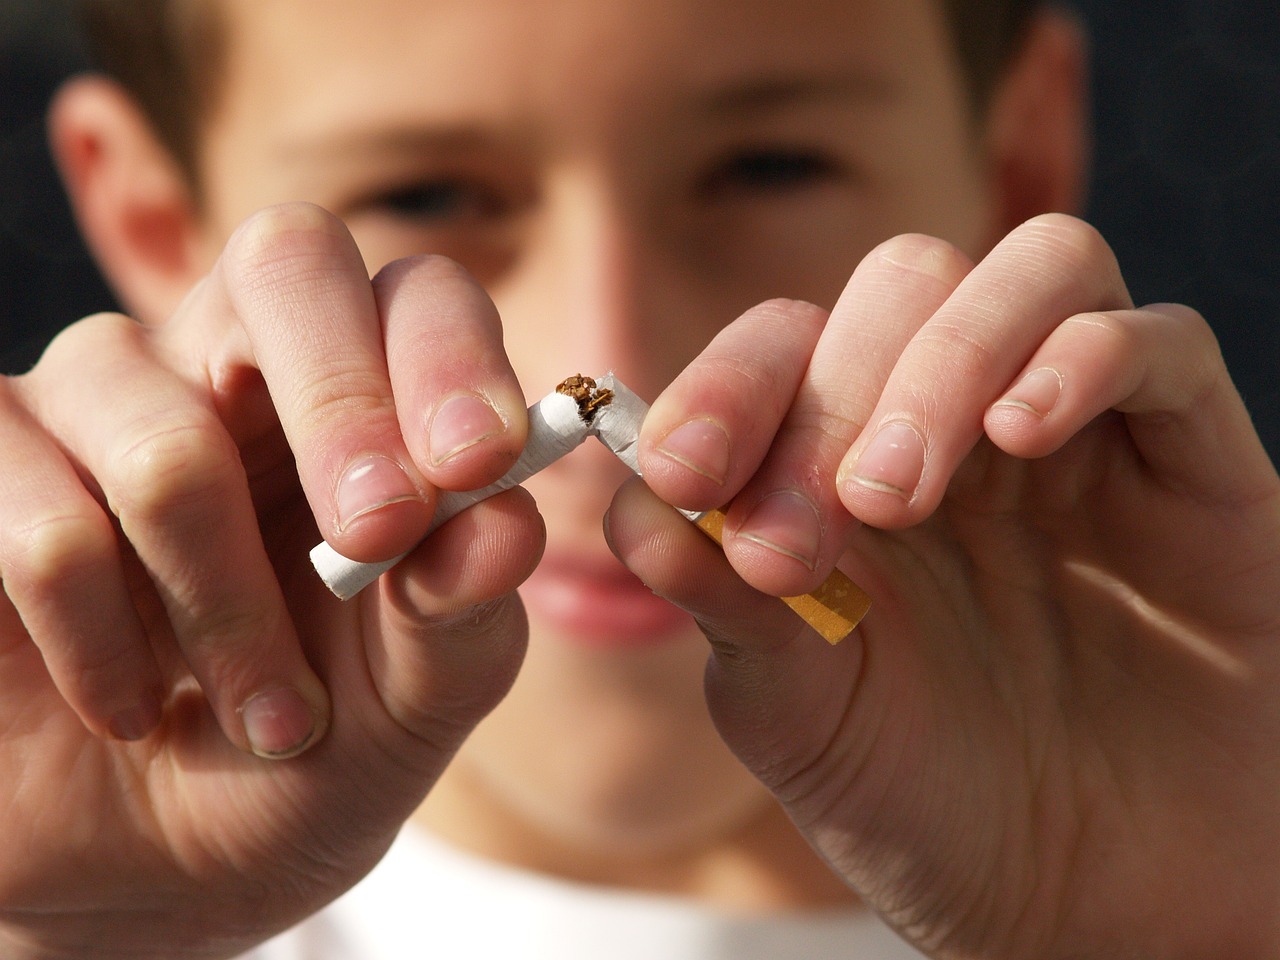 Verwijzen naar extra intensieve begeleiding voor stoppen met roken nu ook mogelijk voor ketenzorg patiënten